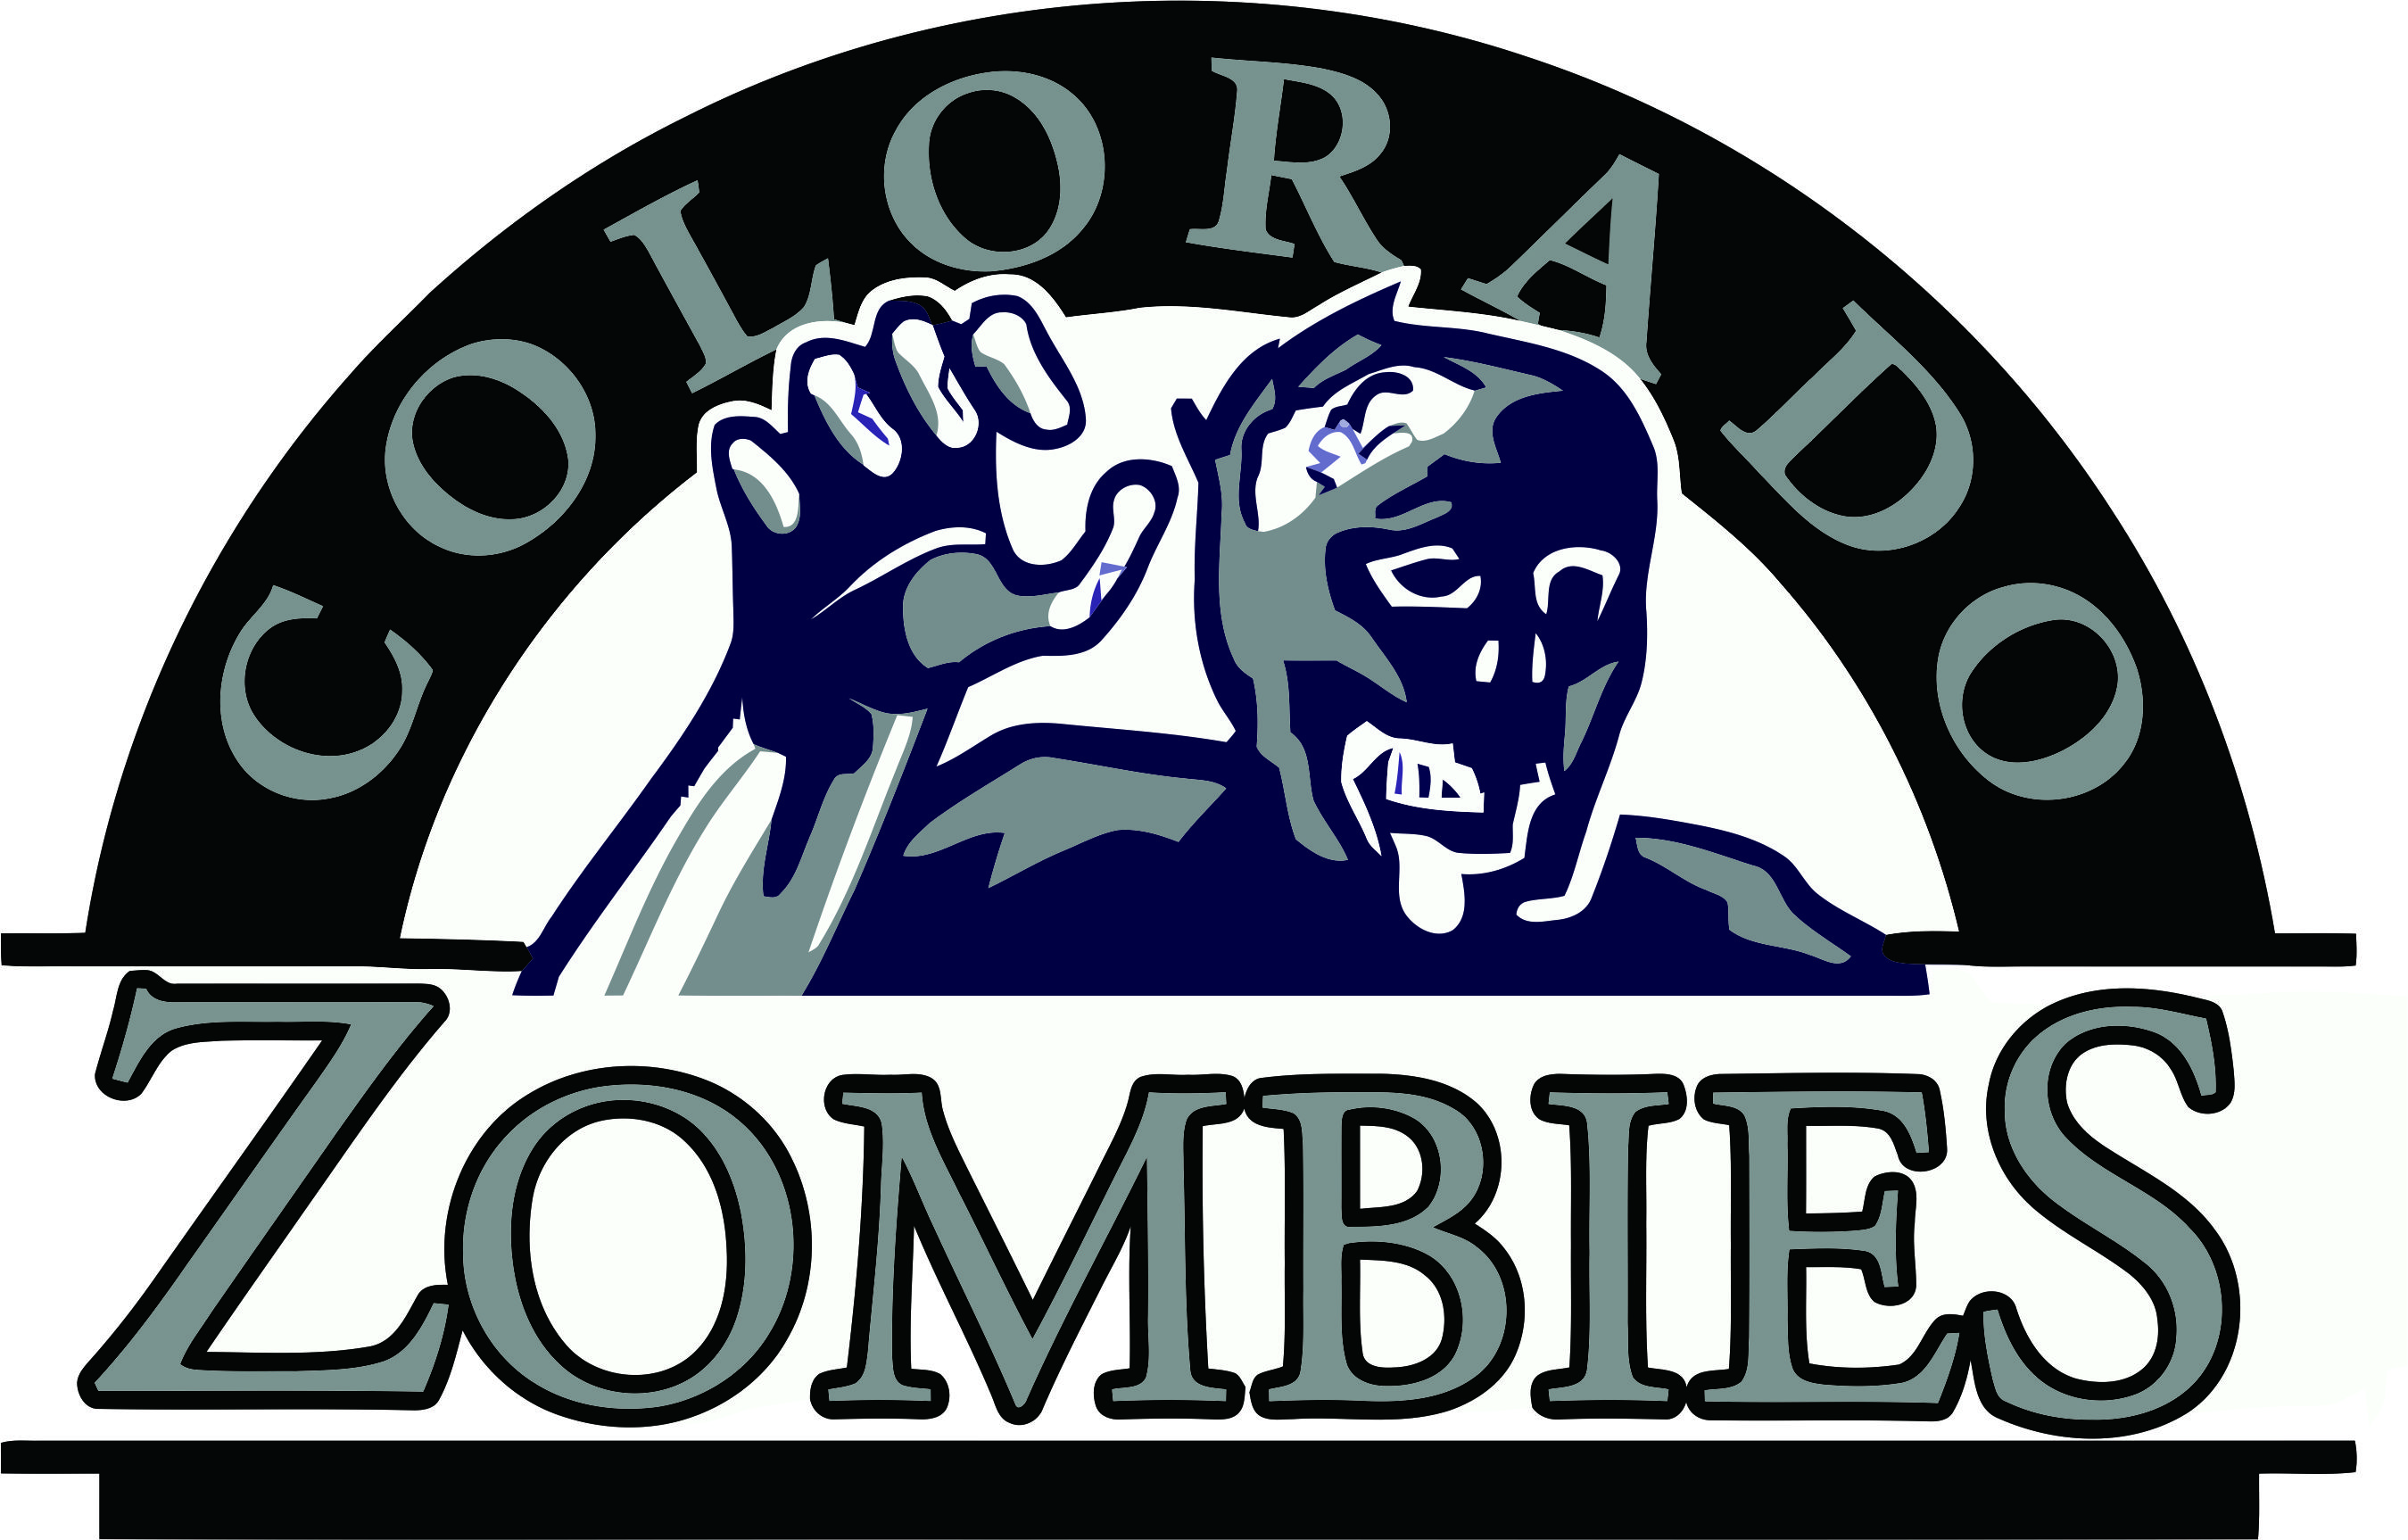 Colorado Rockies Zombies Logo fabric transfer